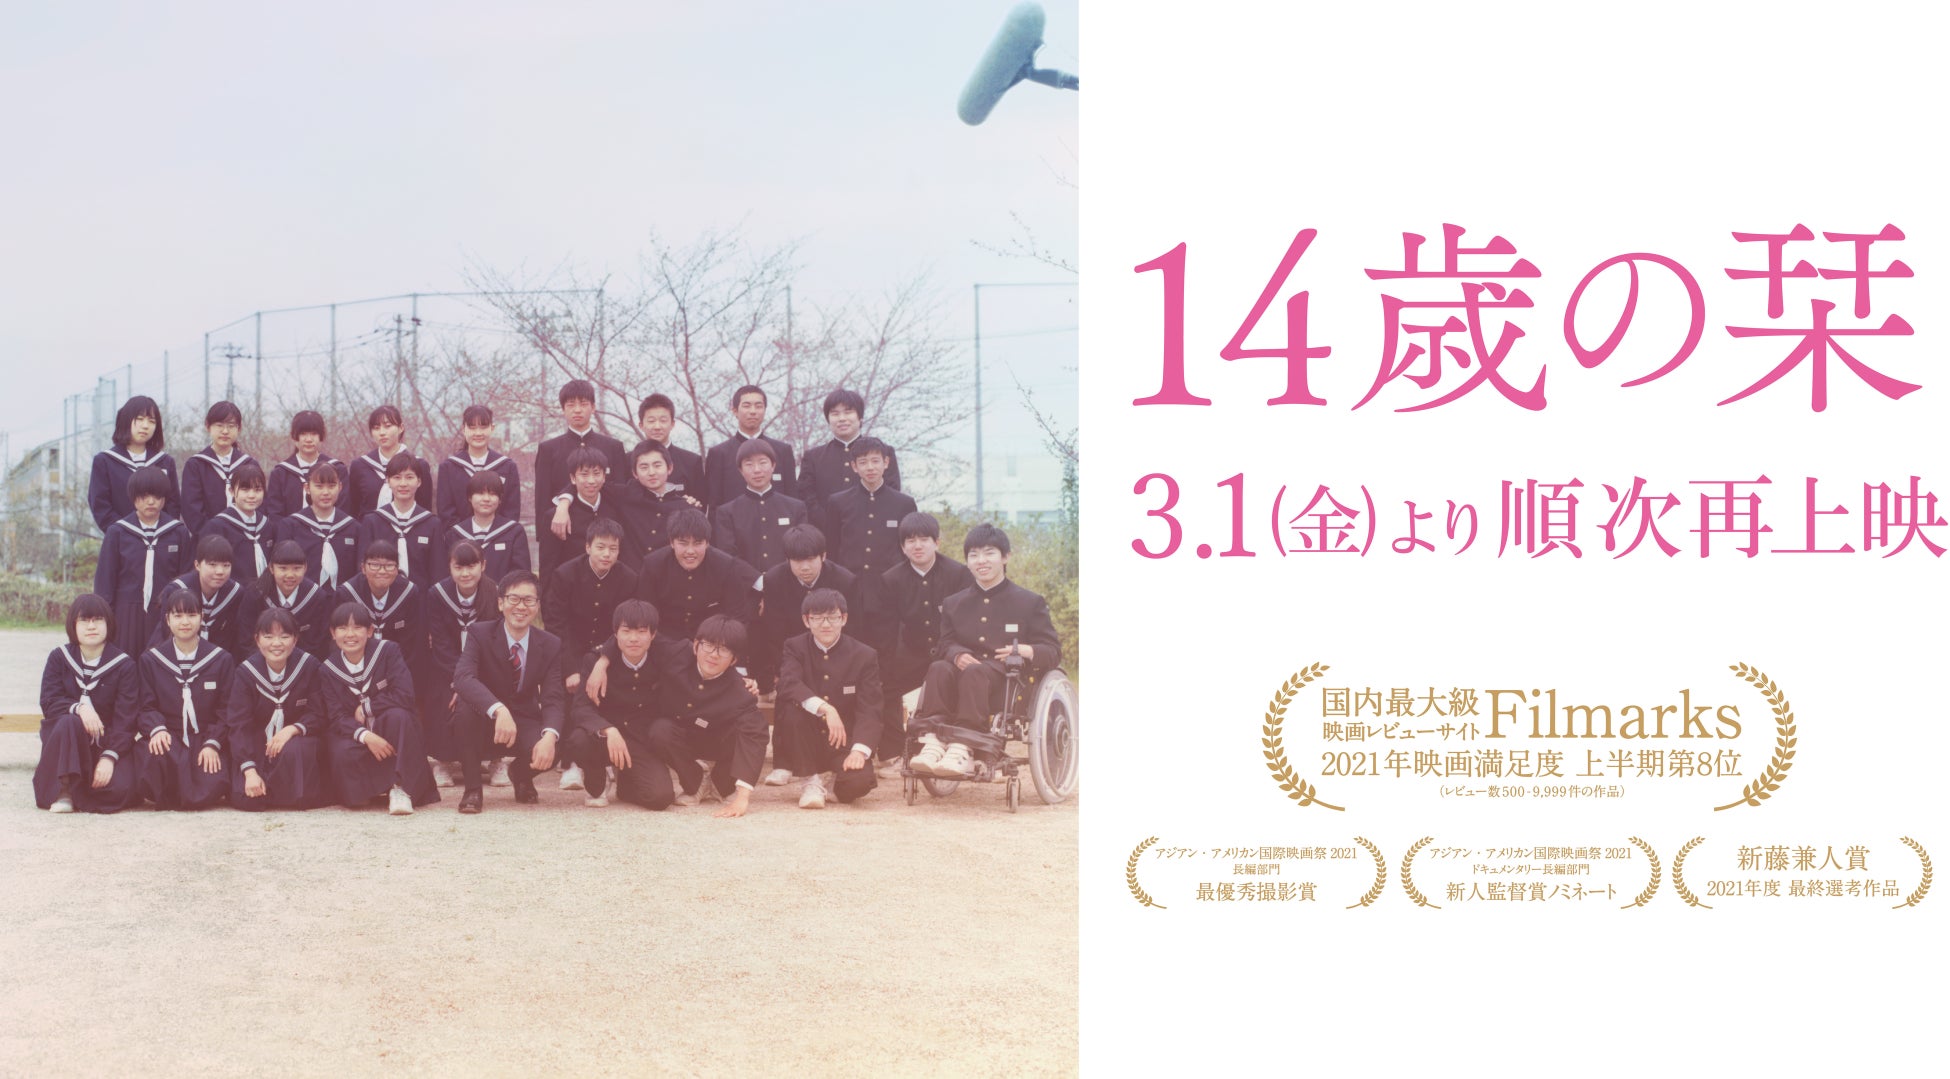 中学2年生の1クラス35人全員に密着した映画『14歳の栞』3度目の”春の限定再上映”が決定。3月1日より全国で順次公開